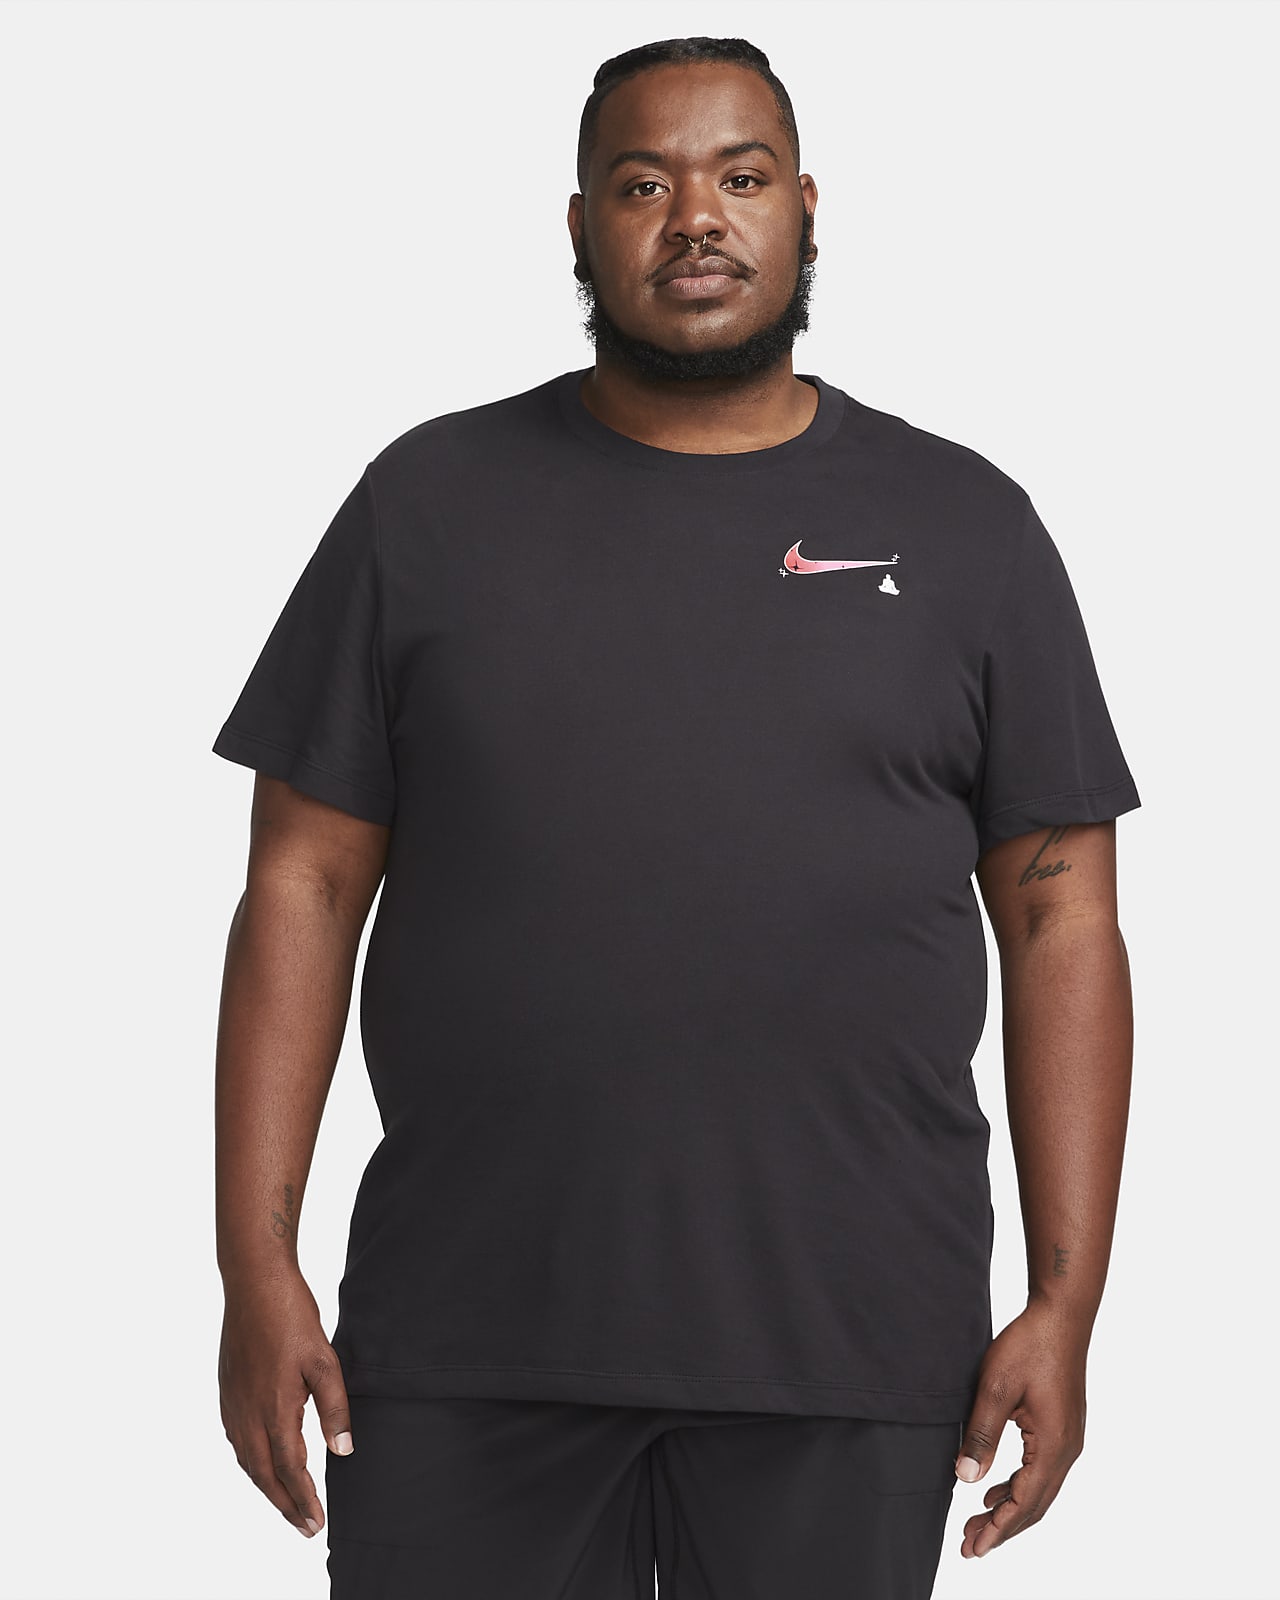 Bering strædet Lima support Nike Dri-FIT Men's Yoga T-Shirt. Nike.com